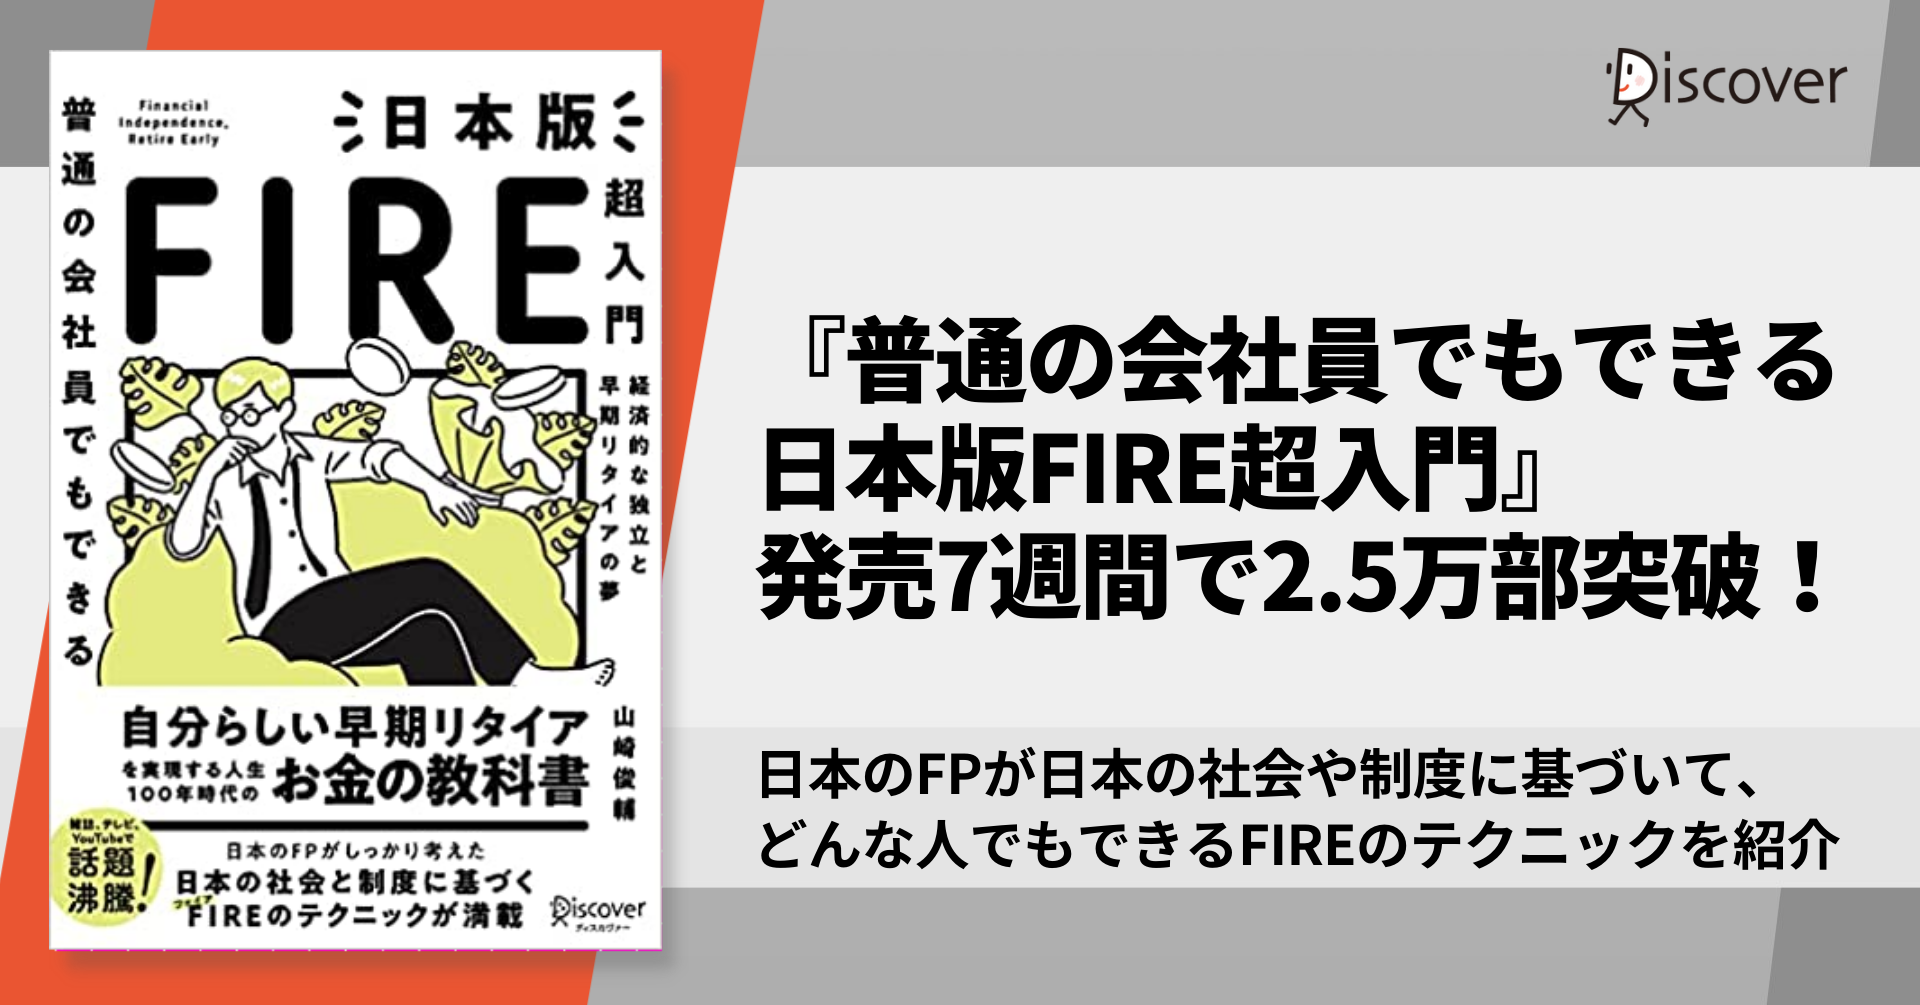 発売後即重版 日本人のためのfireテクニックが満載の 普通の会社員でもできる日本版fire超入門 2 5万部突破 株式会社ディスカヴァー トゥエンティワンのプレスリリース